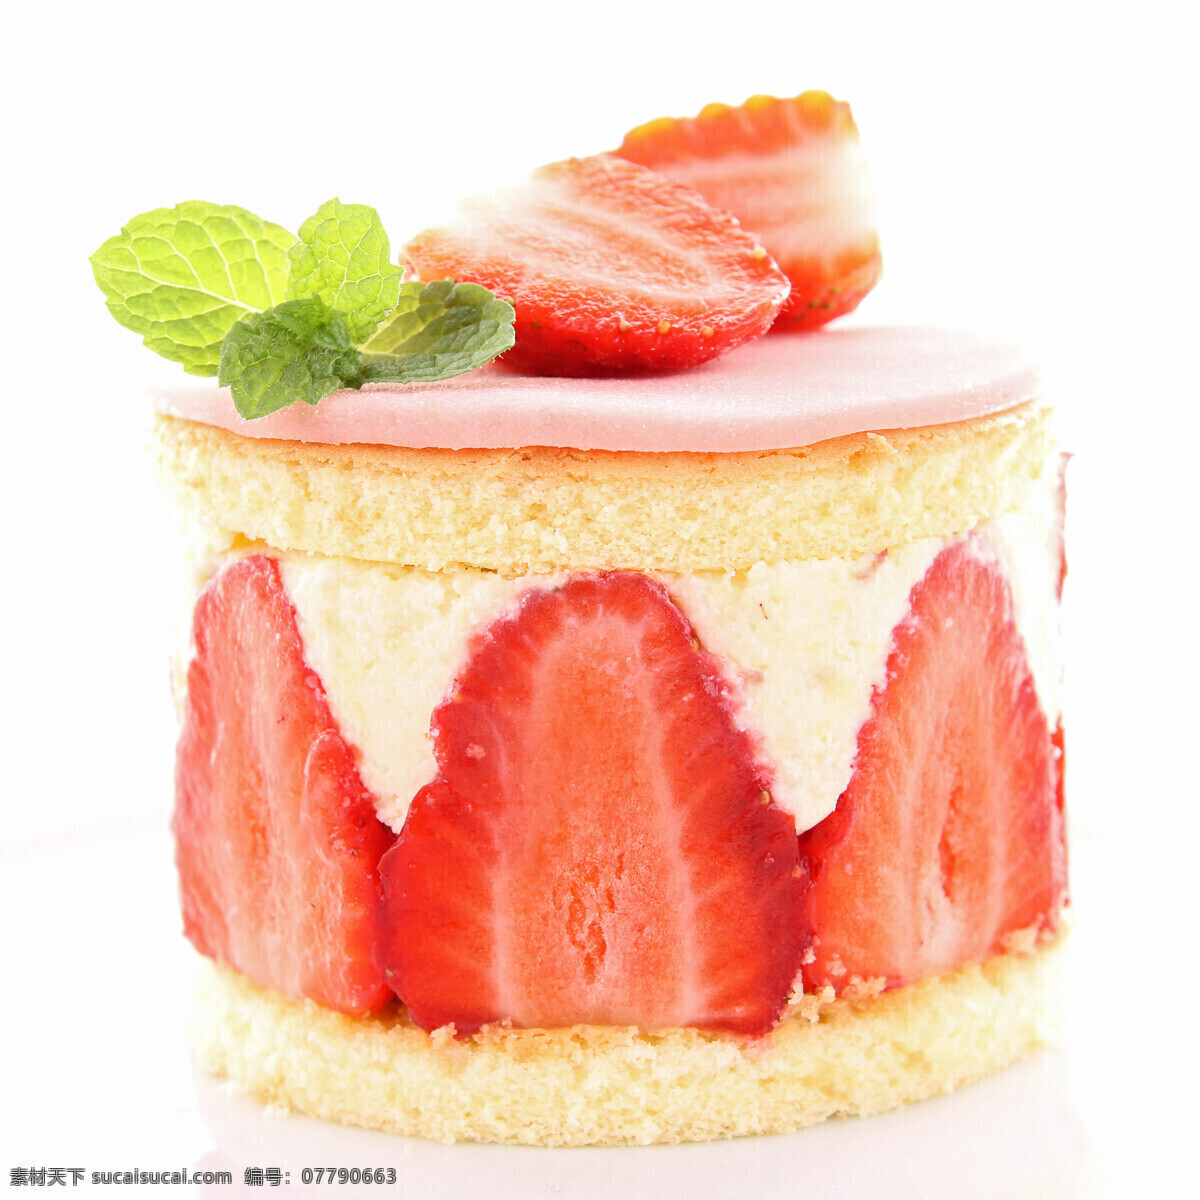 好吃 草莓 甜心 甜品 草莓食物 蛋糕 餐厅美食 美味 食物 水果蔬菜 餐饮美食 白色